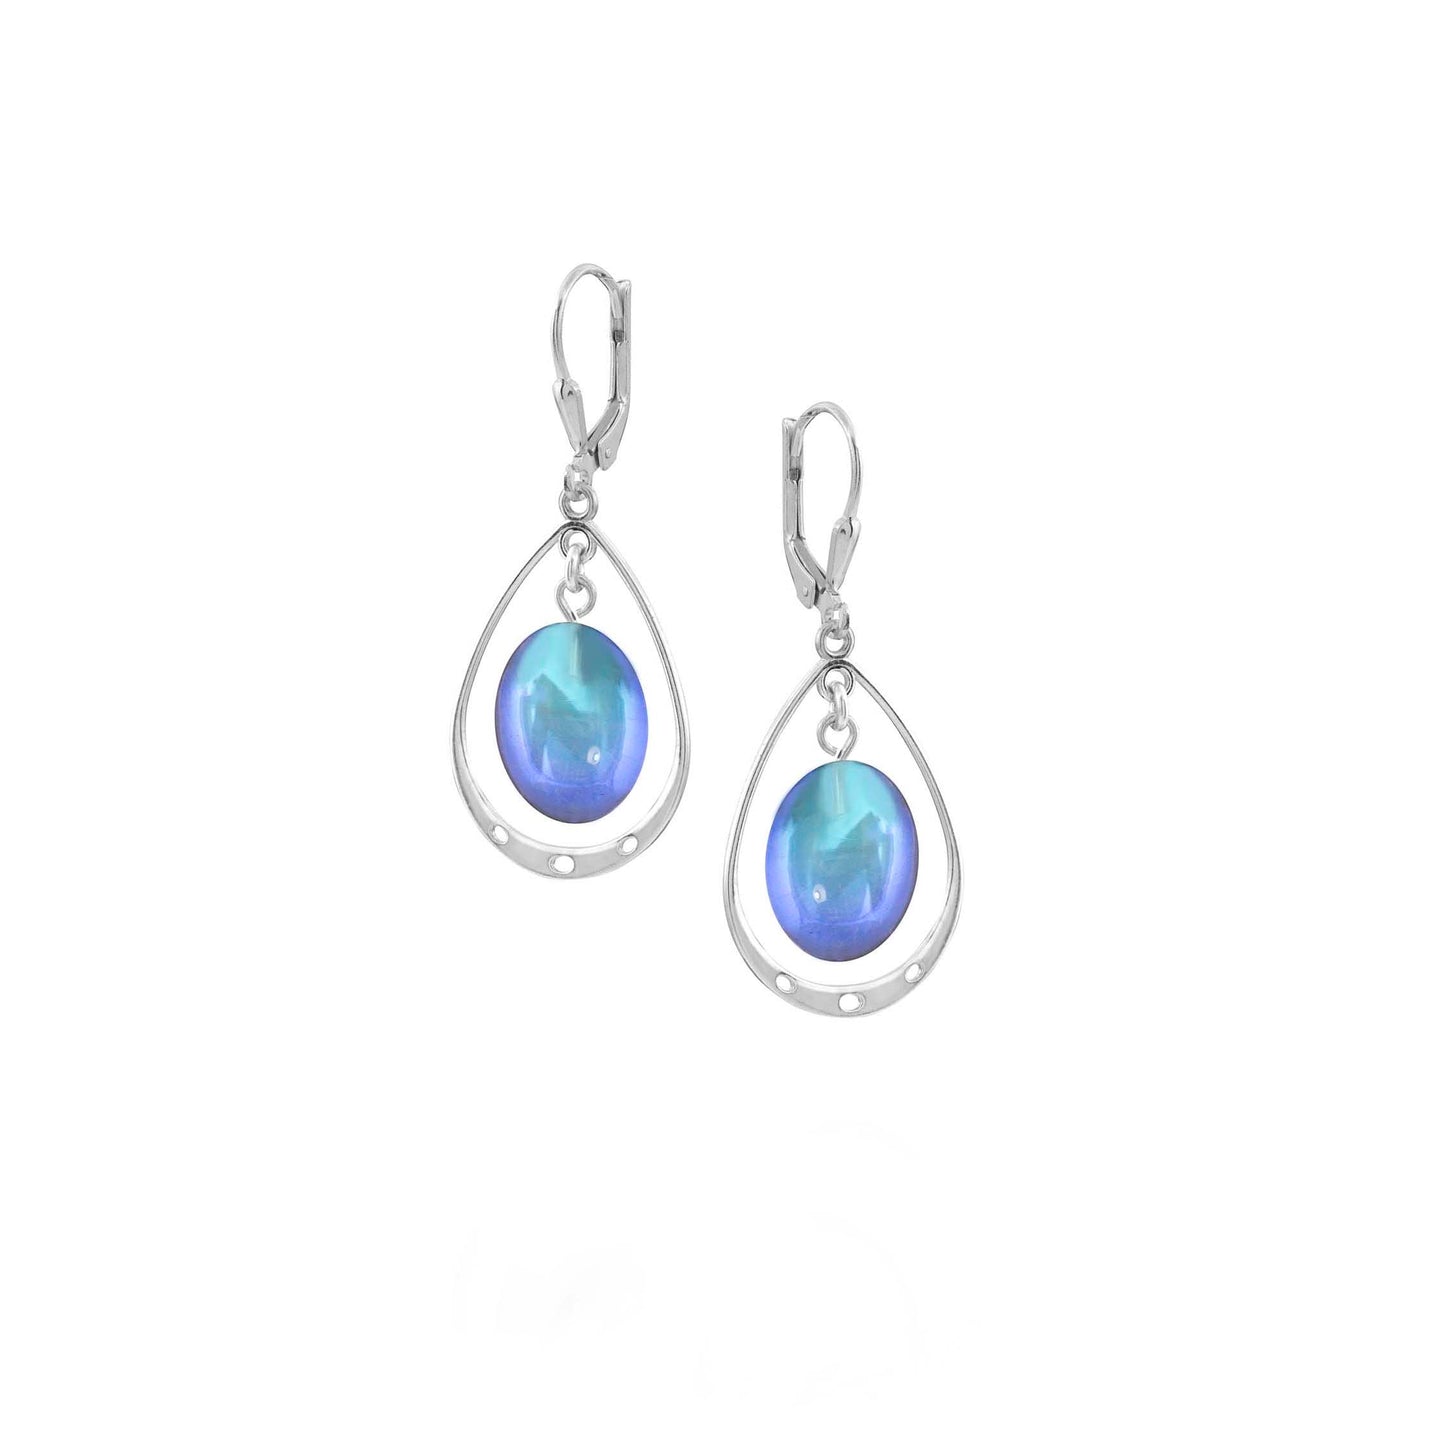 Oval Crystal Earrings with Sterling Silver Loop - Blue